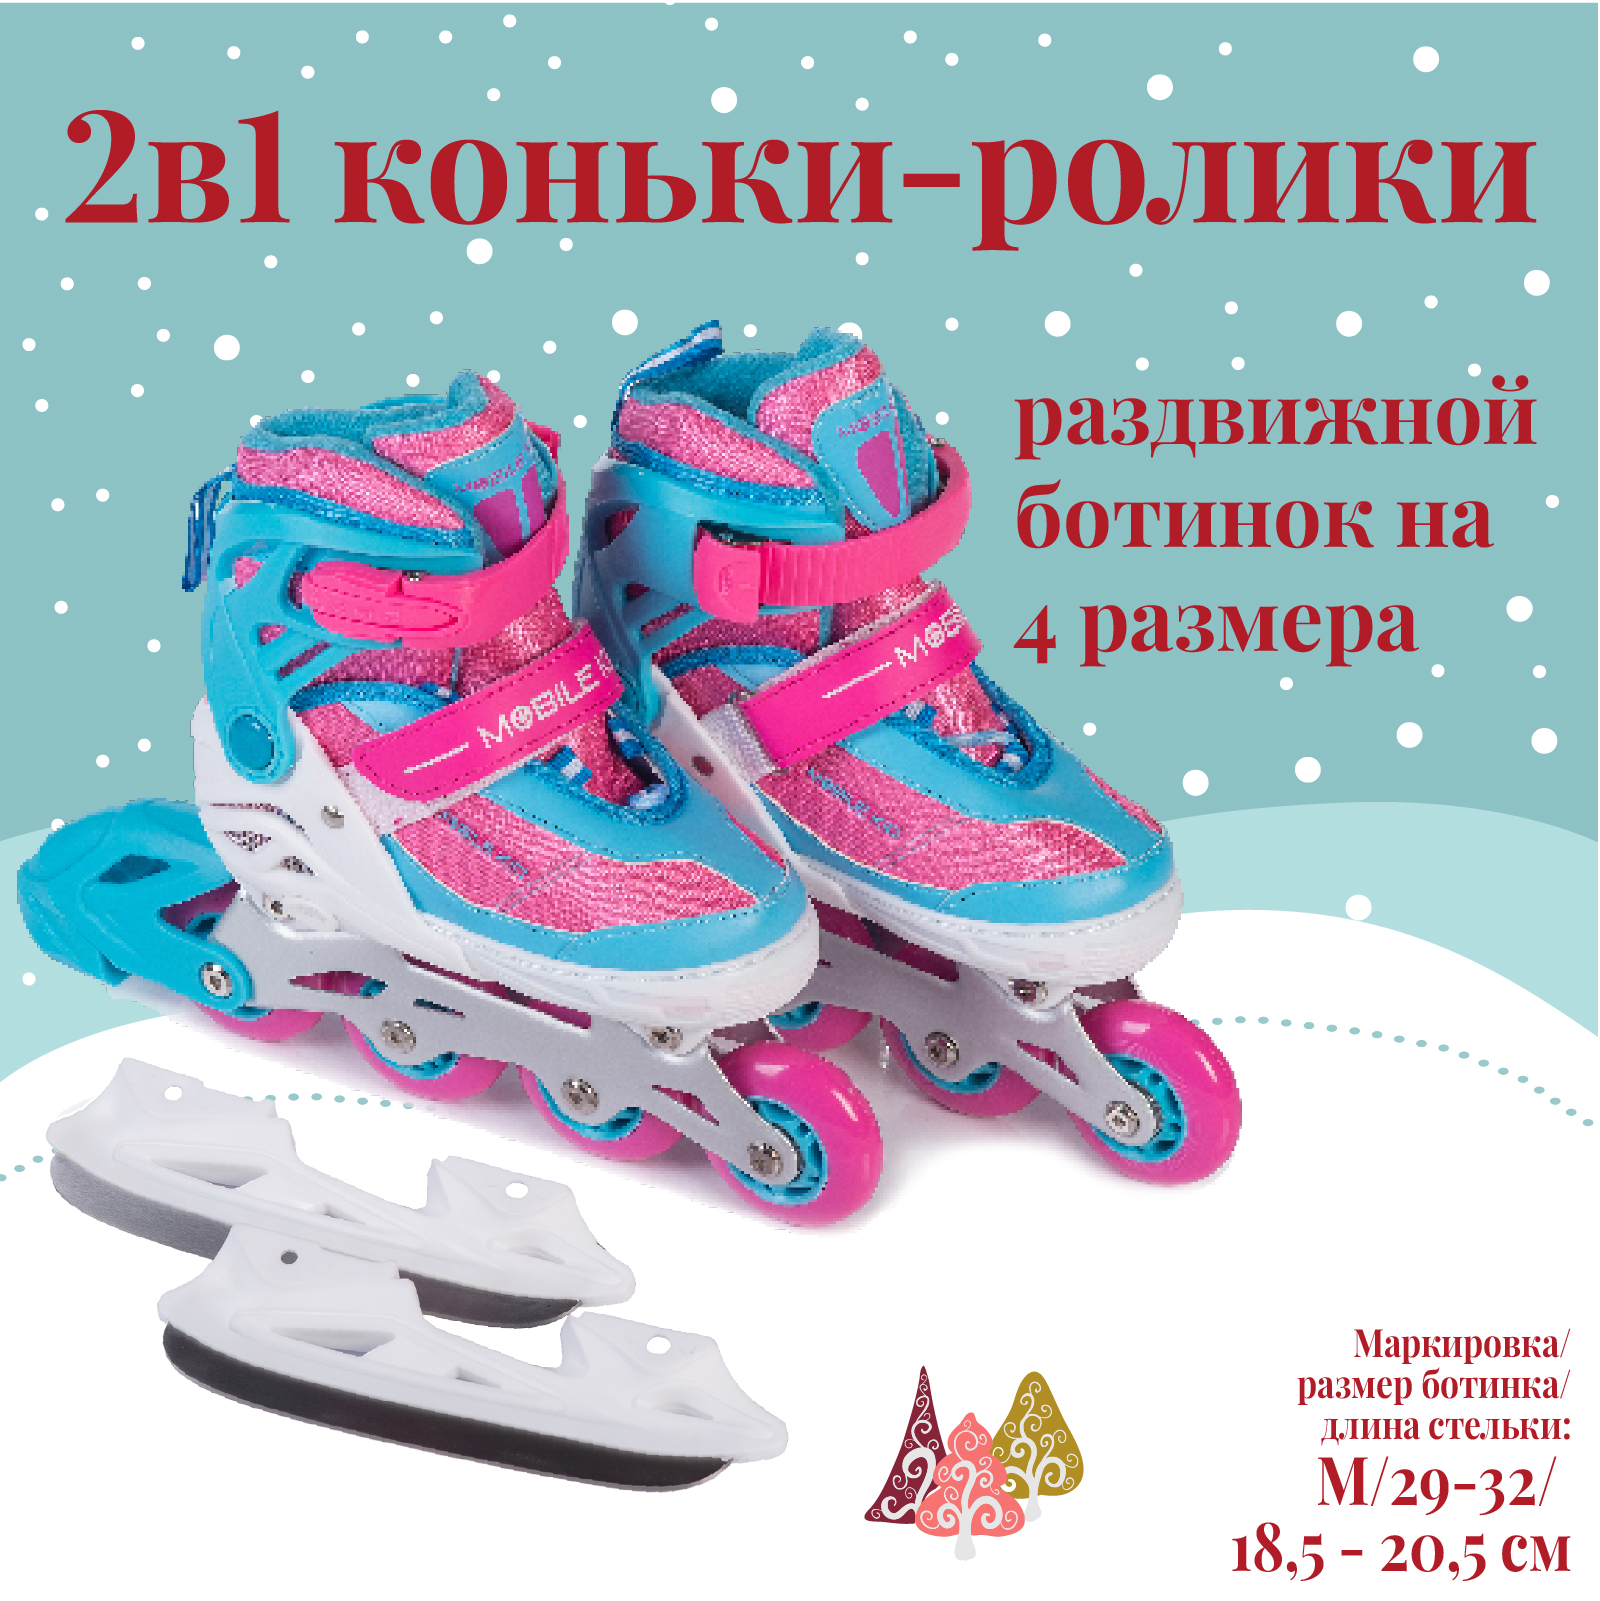 Коньки прогулочные детские Mobile Kid Uni Skate M, бирюзовый; розовый, 29; 30; 31; 32